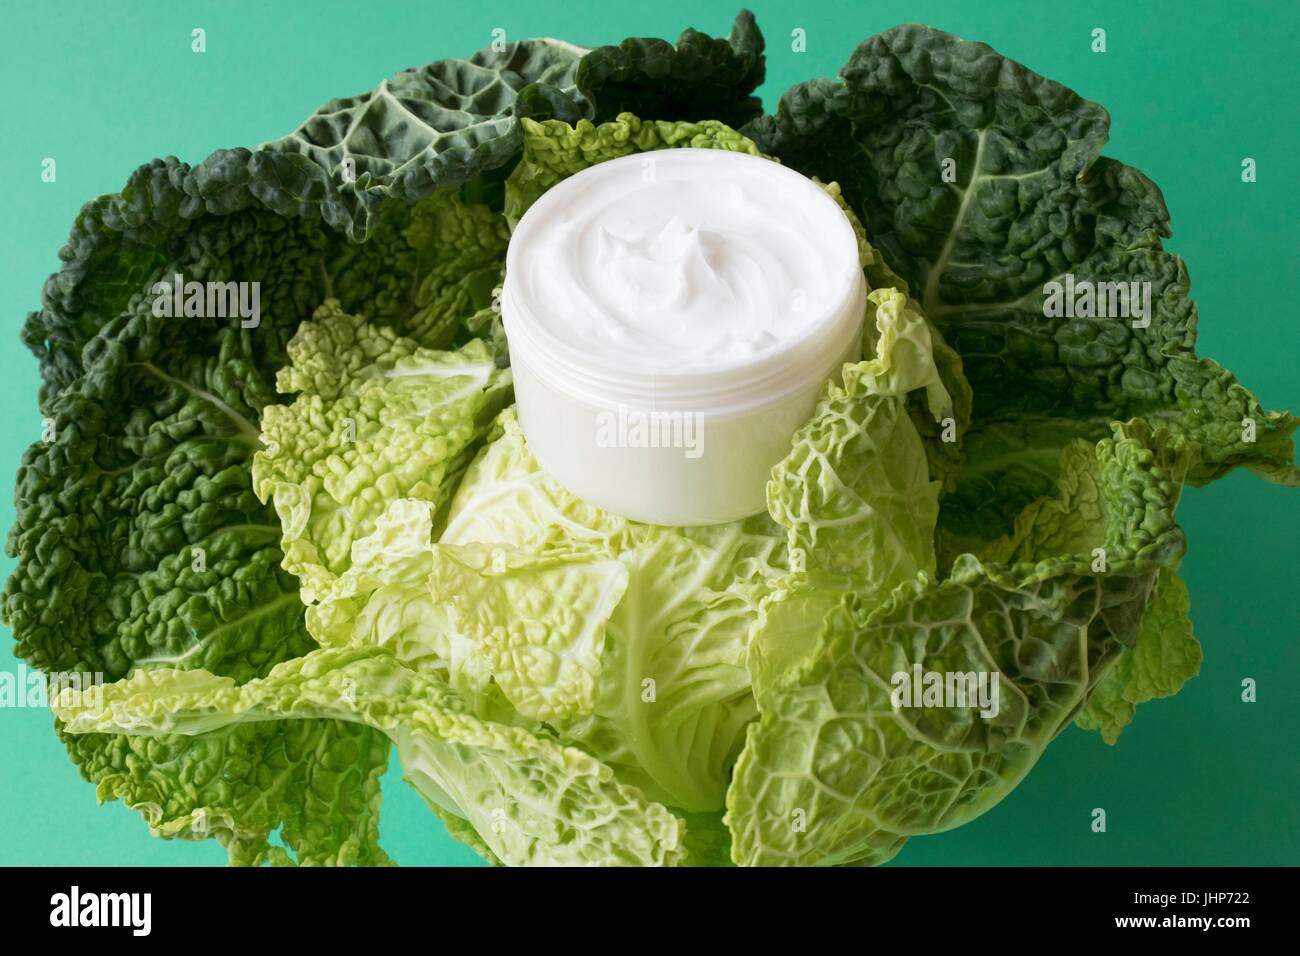 Topf mit feuchtigkeitsspendenden Creme und Kohl verlässt vor einem grünen Hintergrund. Konzeptbild von natürlichen Inhaltsstoffen in Kosmetika. Stockfoto